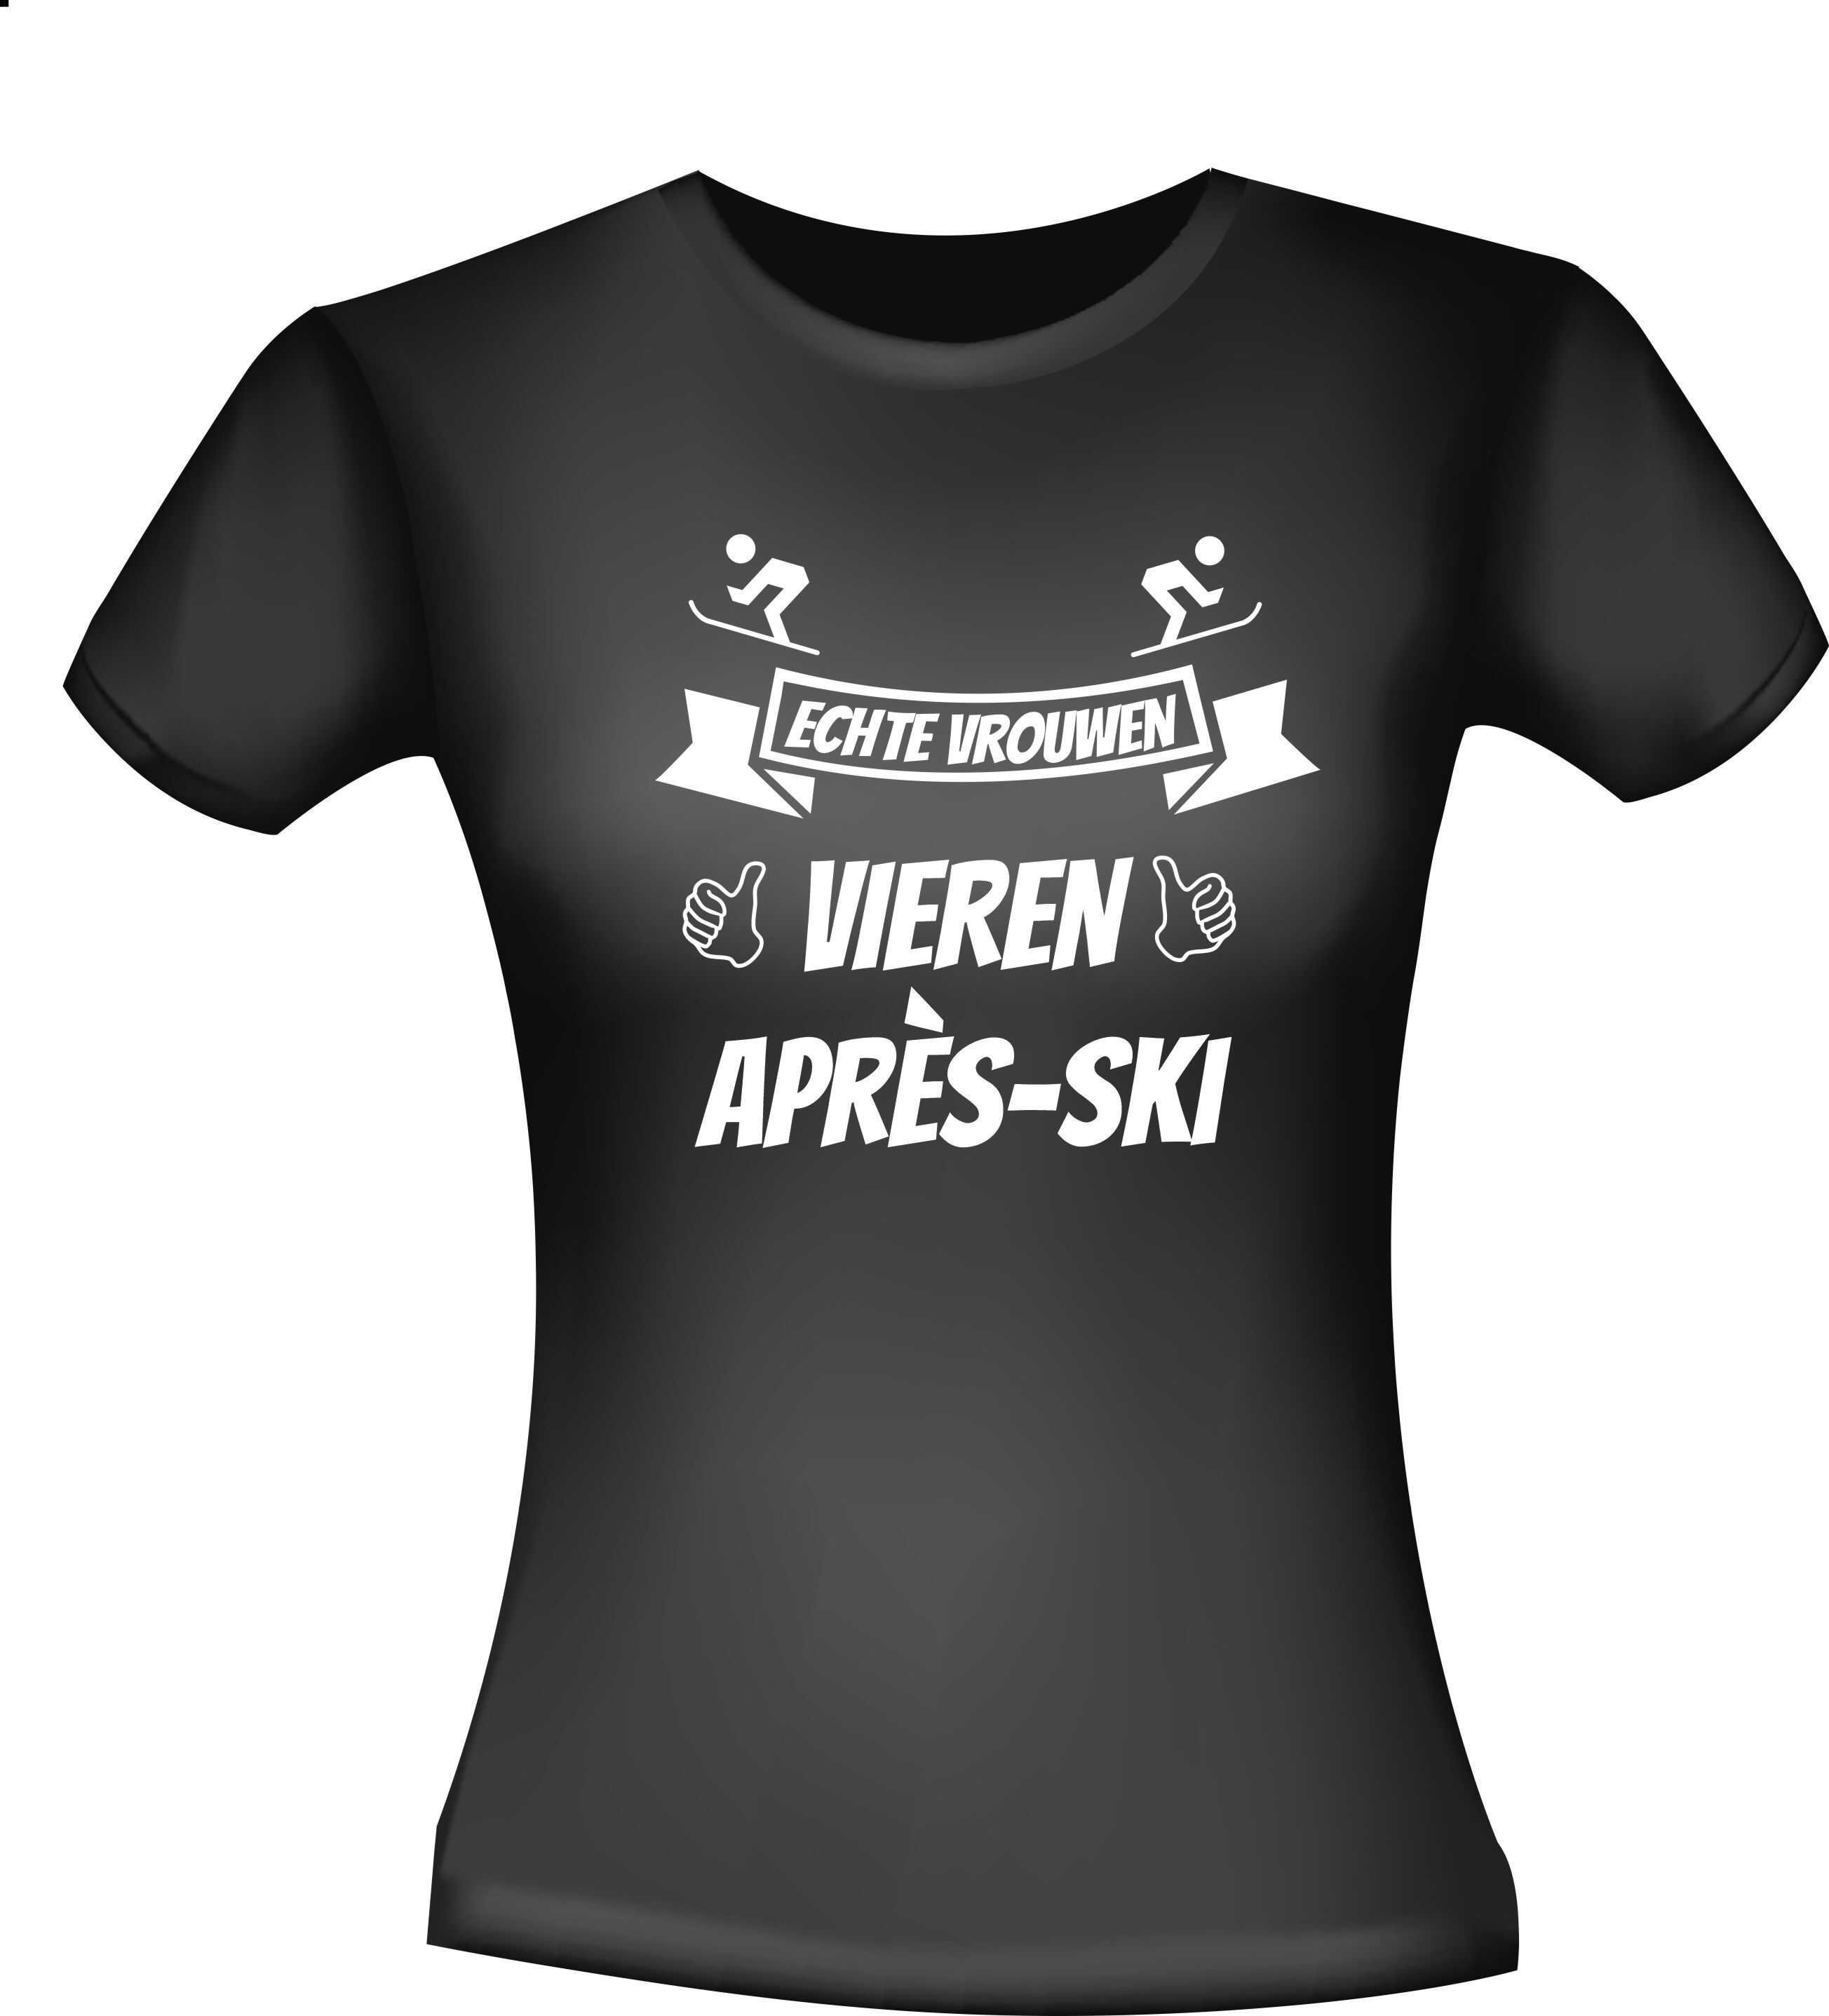 echte vrouwen vieren Apres-ski t-shirt